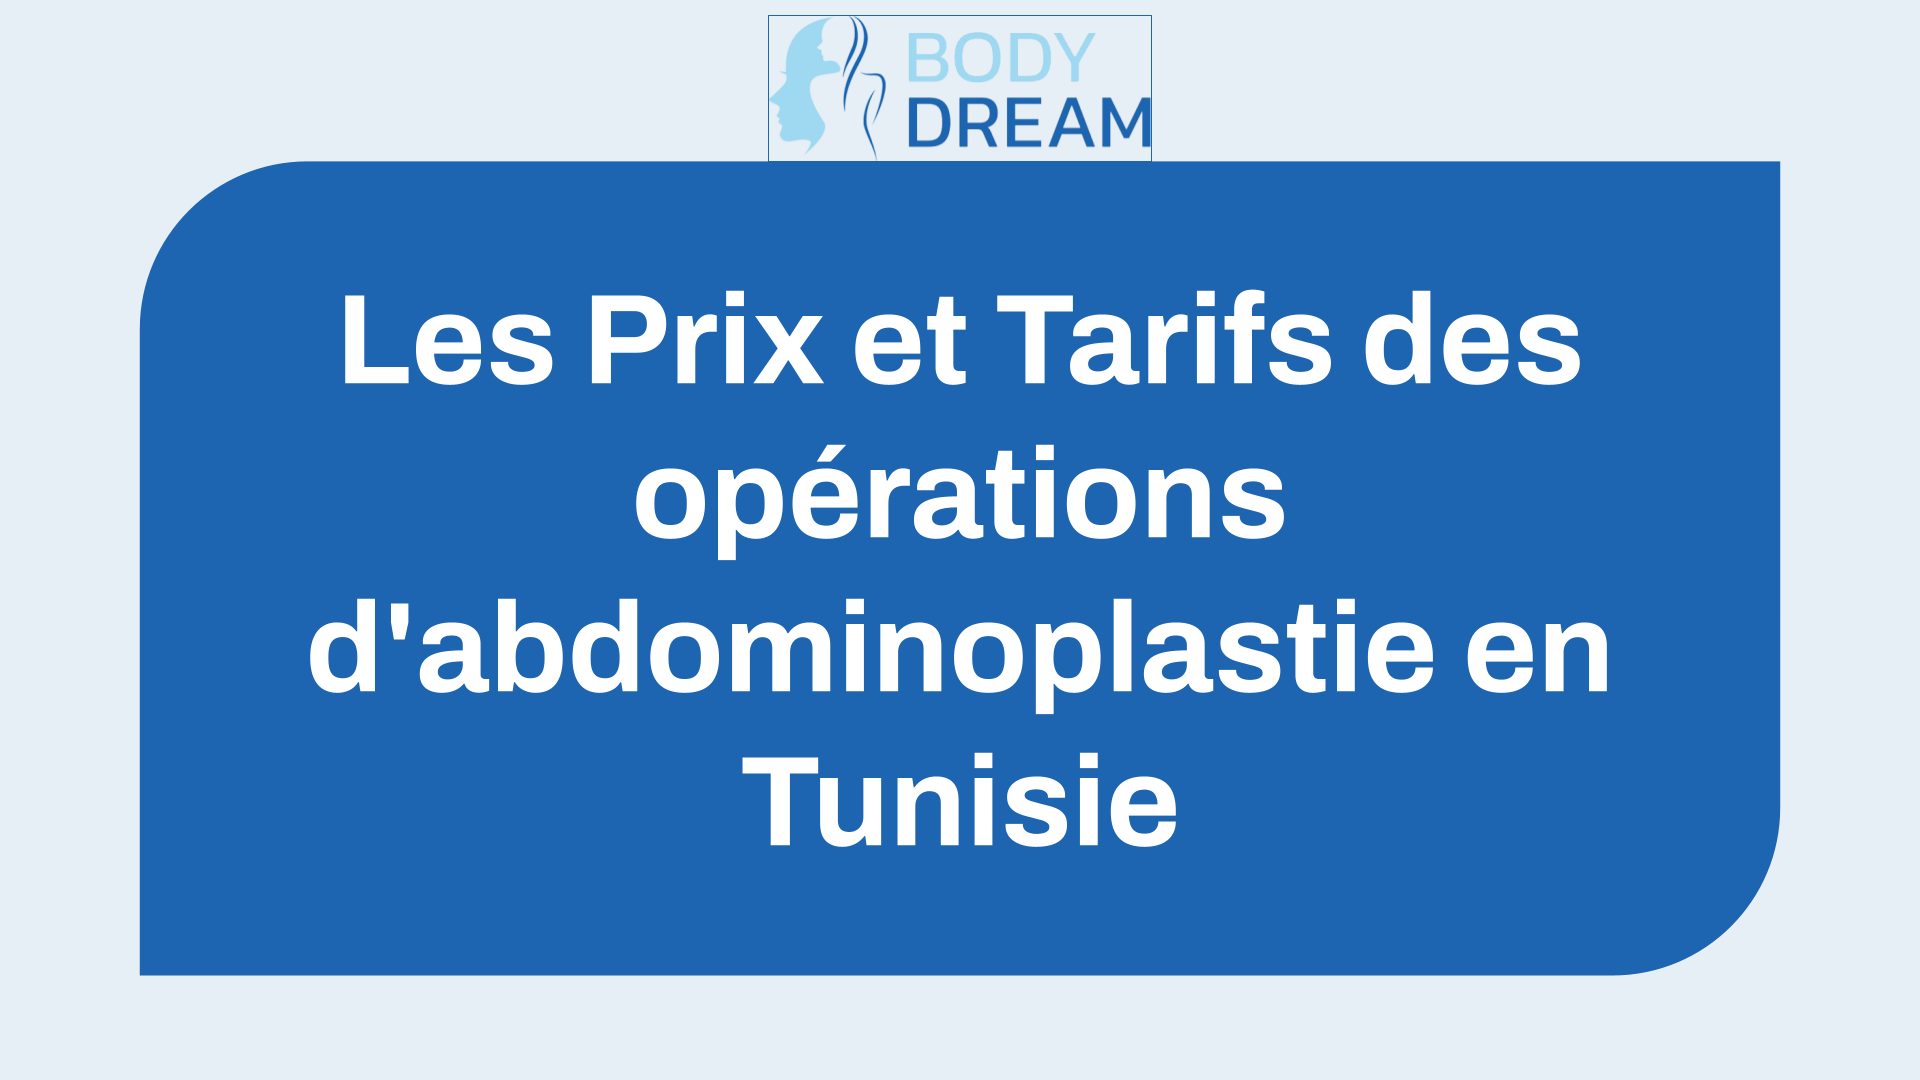 Les 5 Prix et Tarifs des opérations d’abdominoplastie en Tunisie en 2023